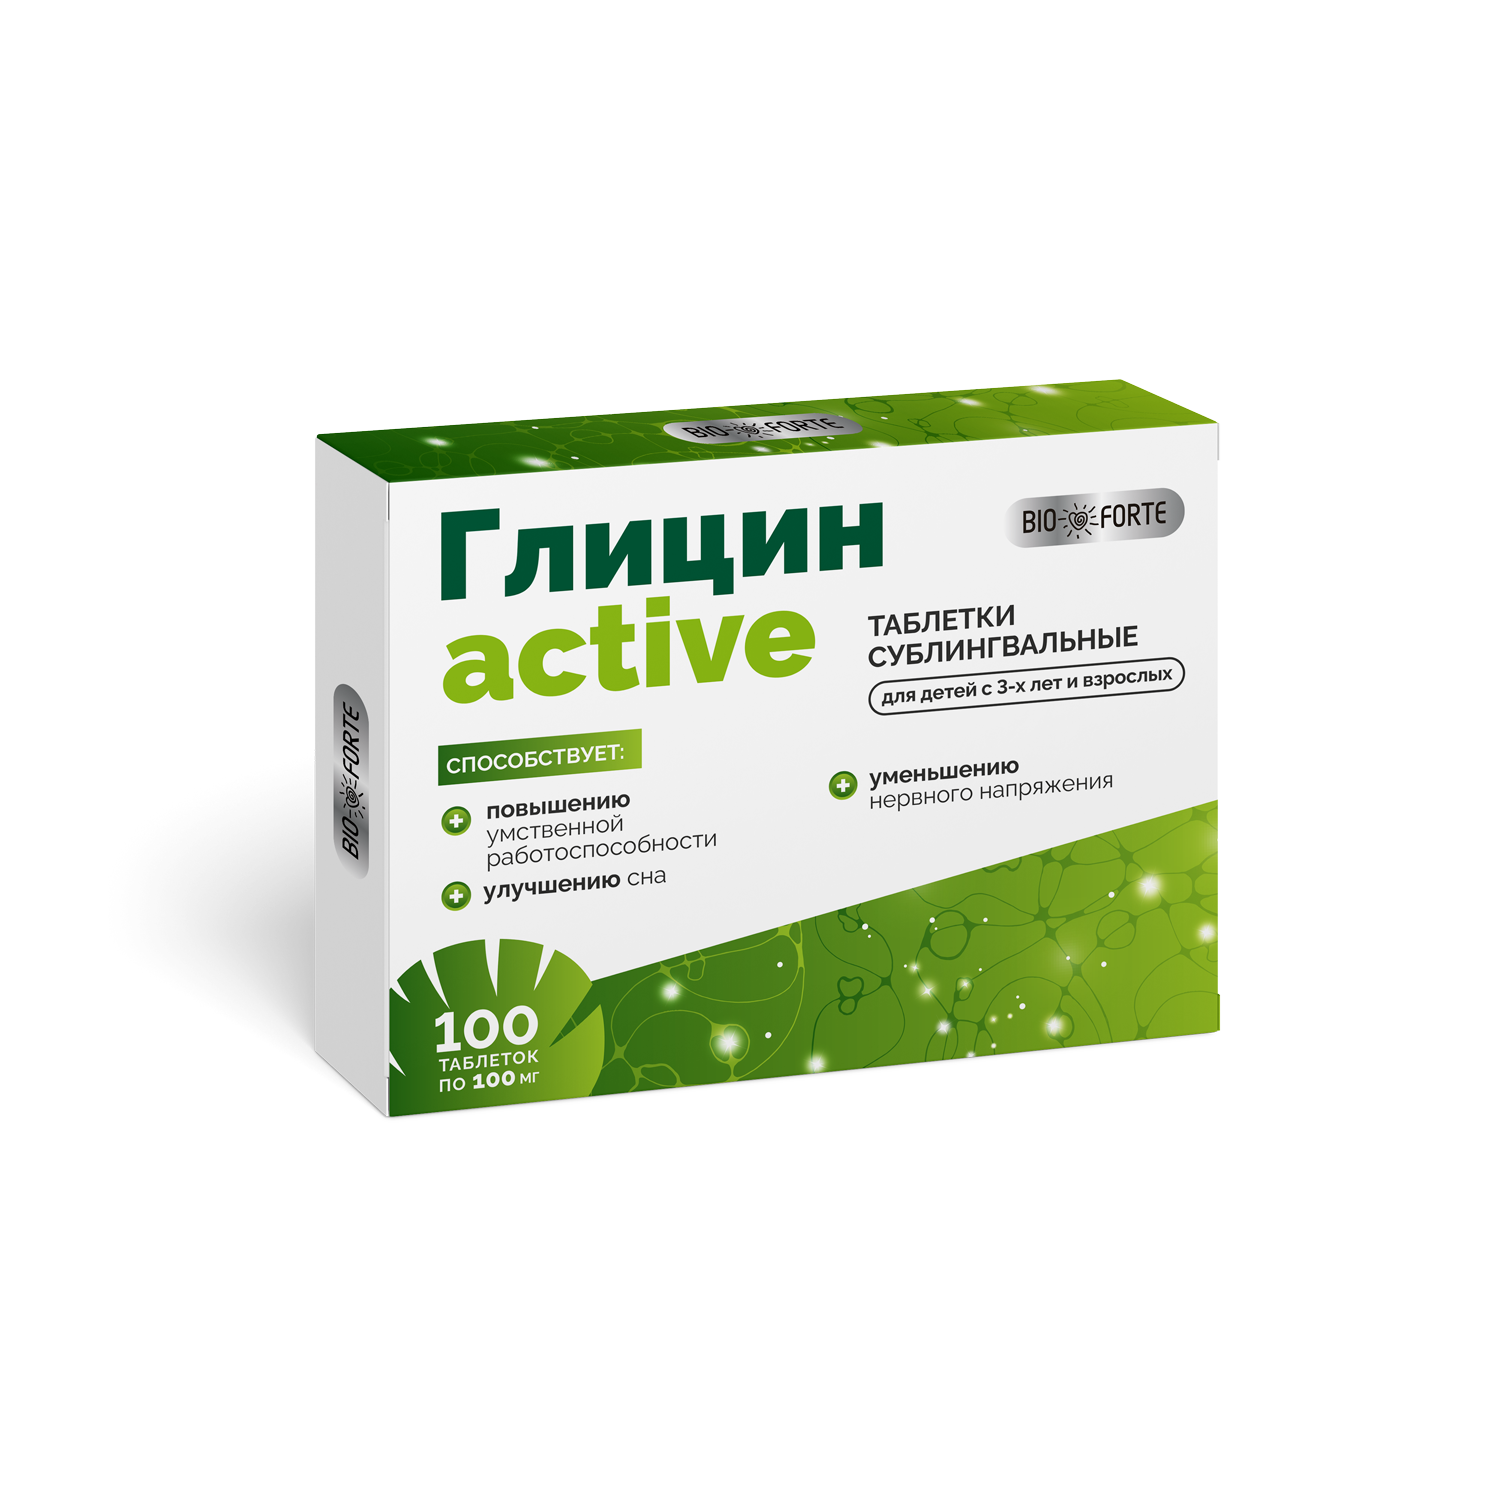 Глицин-Актив BioForte, таблетки для рассасывания, 100 шт. по цене 55 руб., купить в Москве